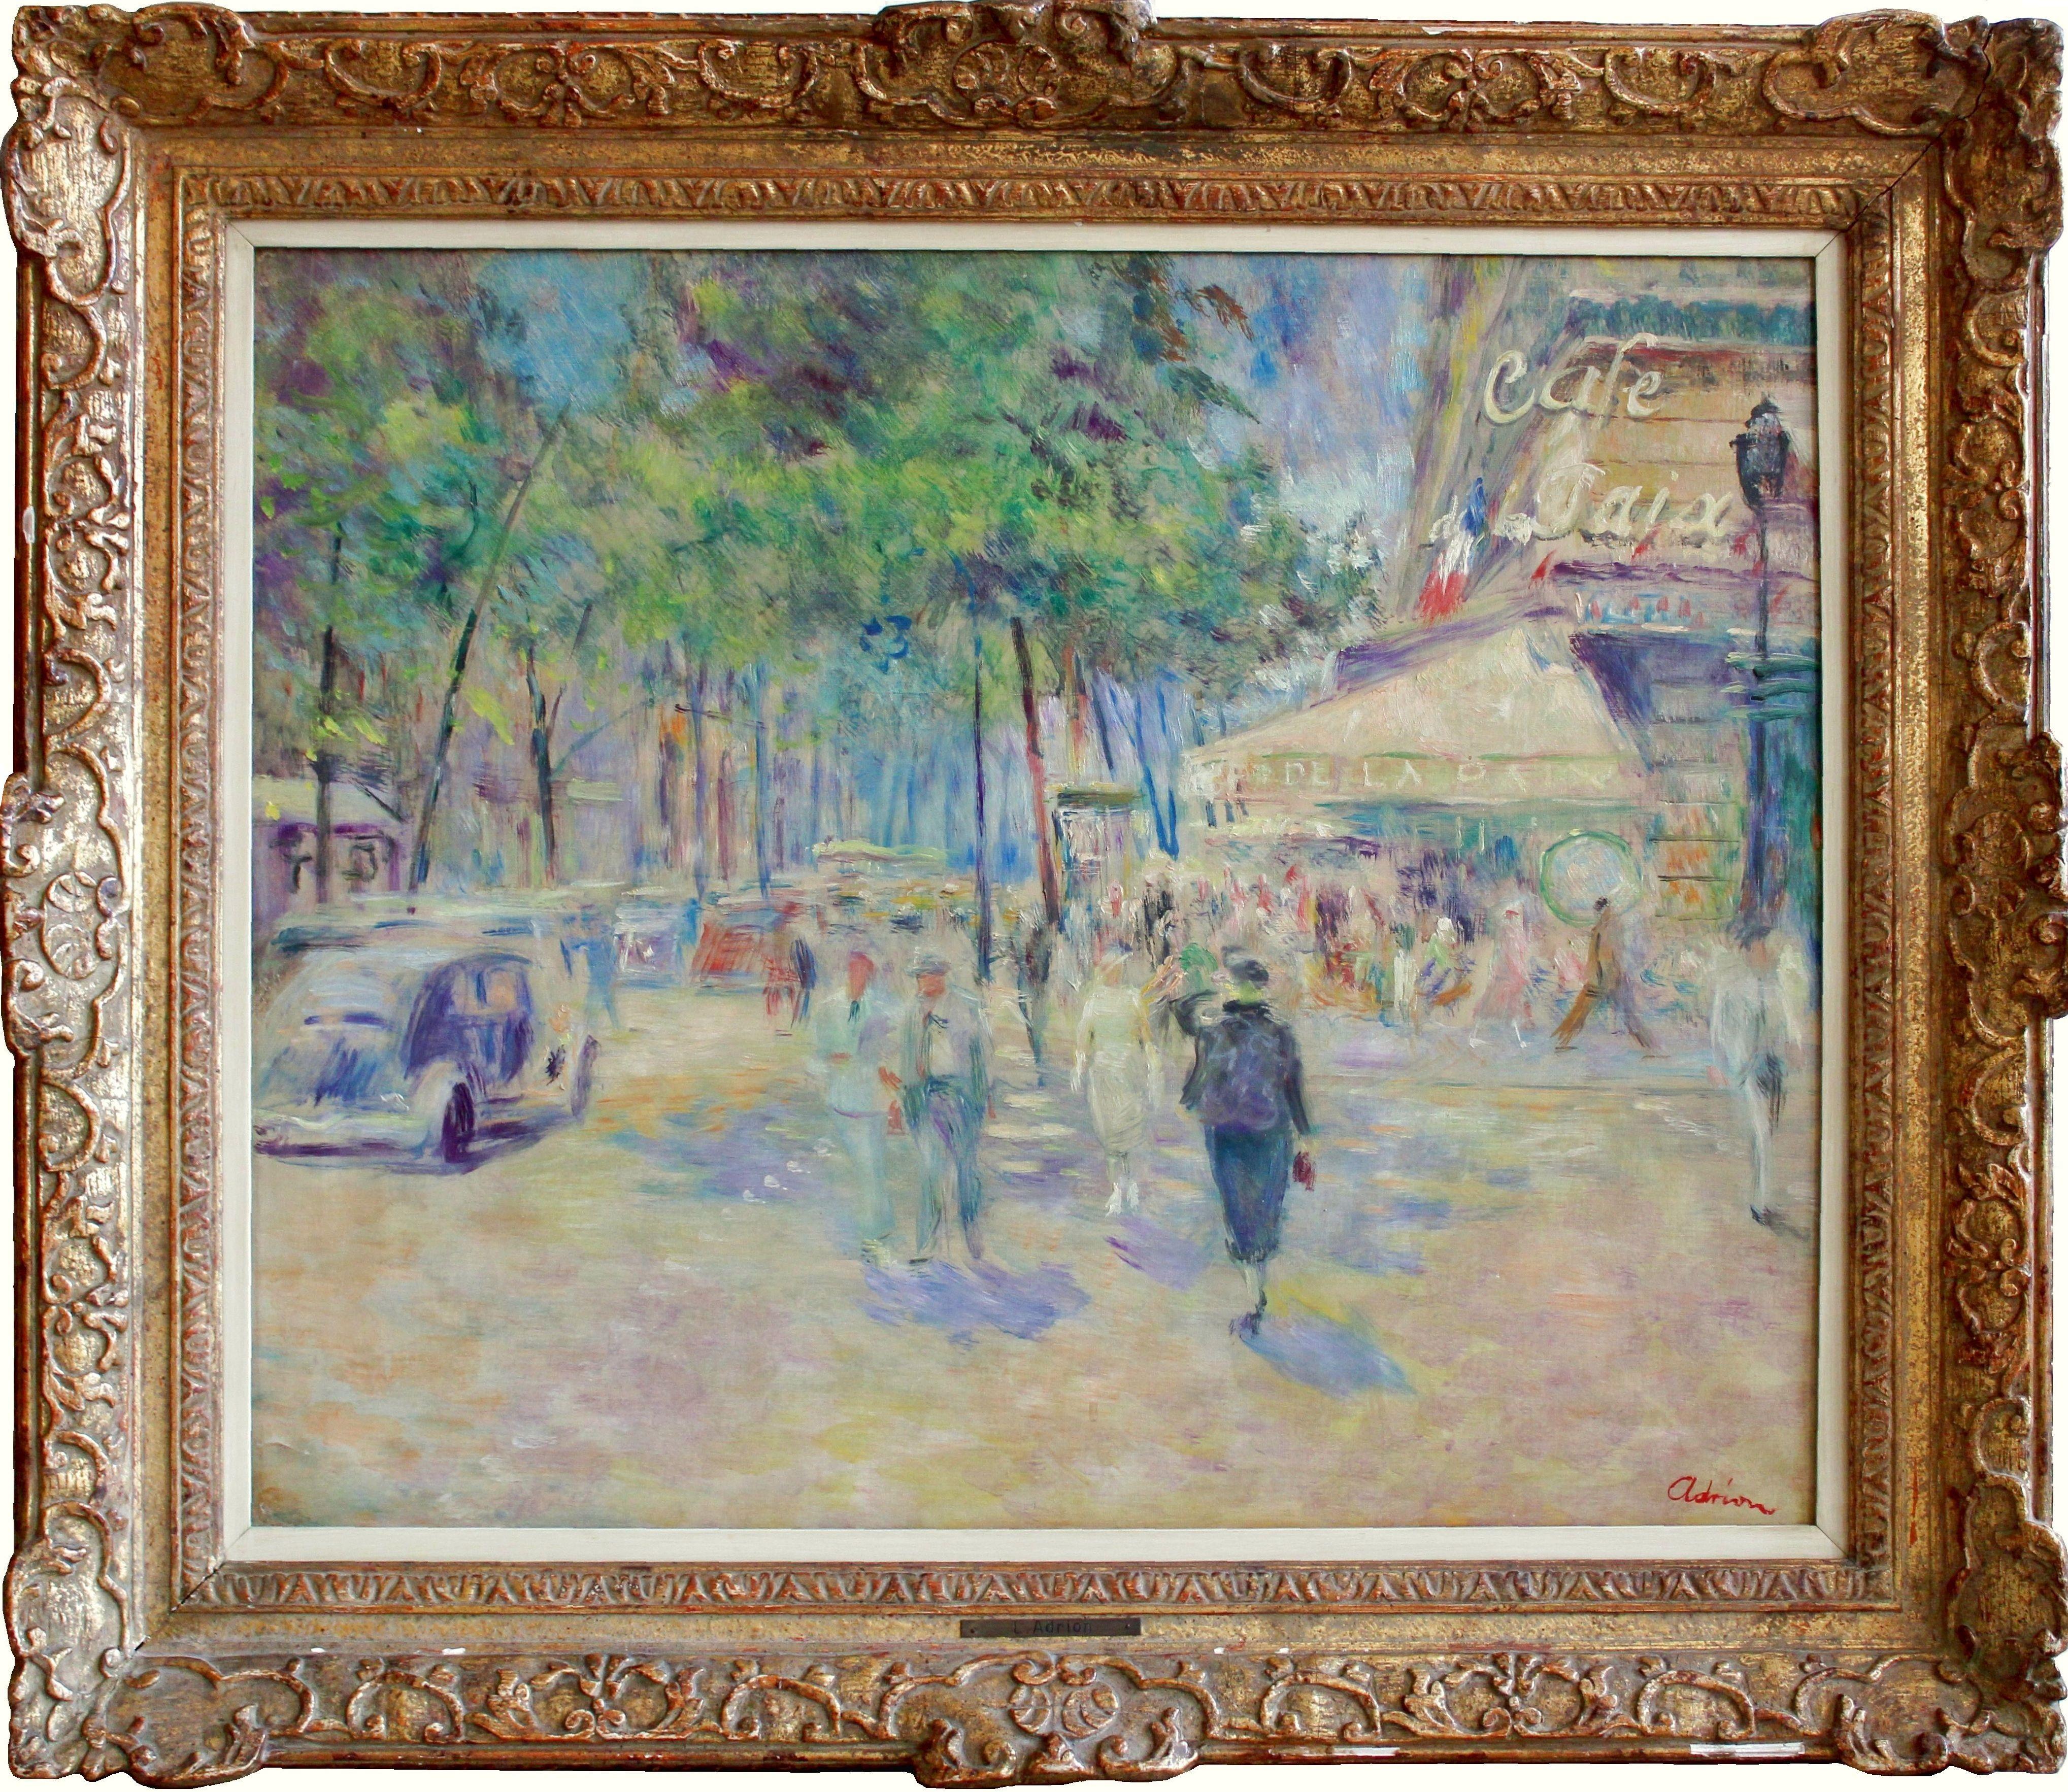 Paris, Cafe de la Paix. Oil on canvas, 60x73 cm - Painting by Lucien Adrion